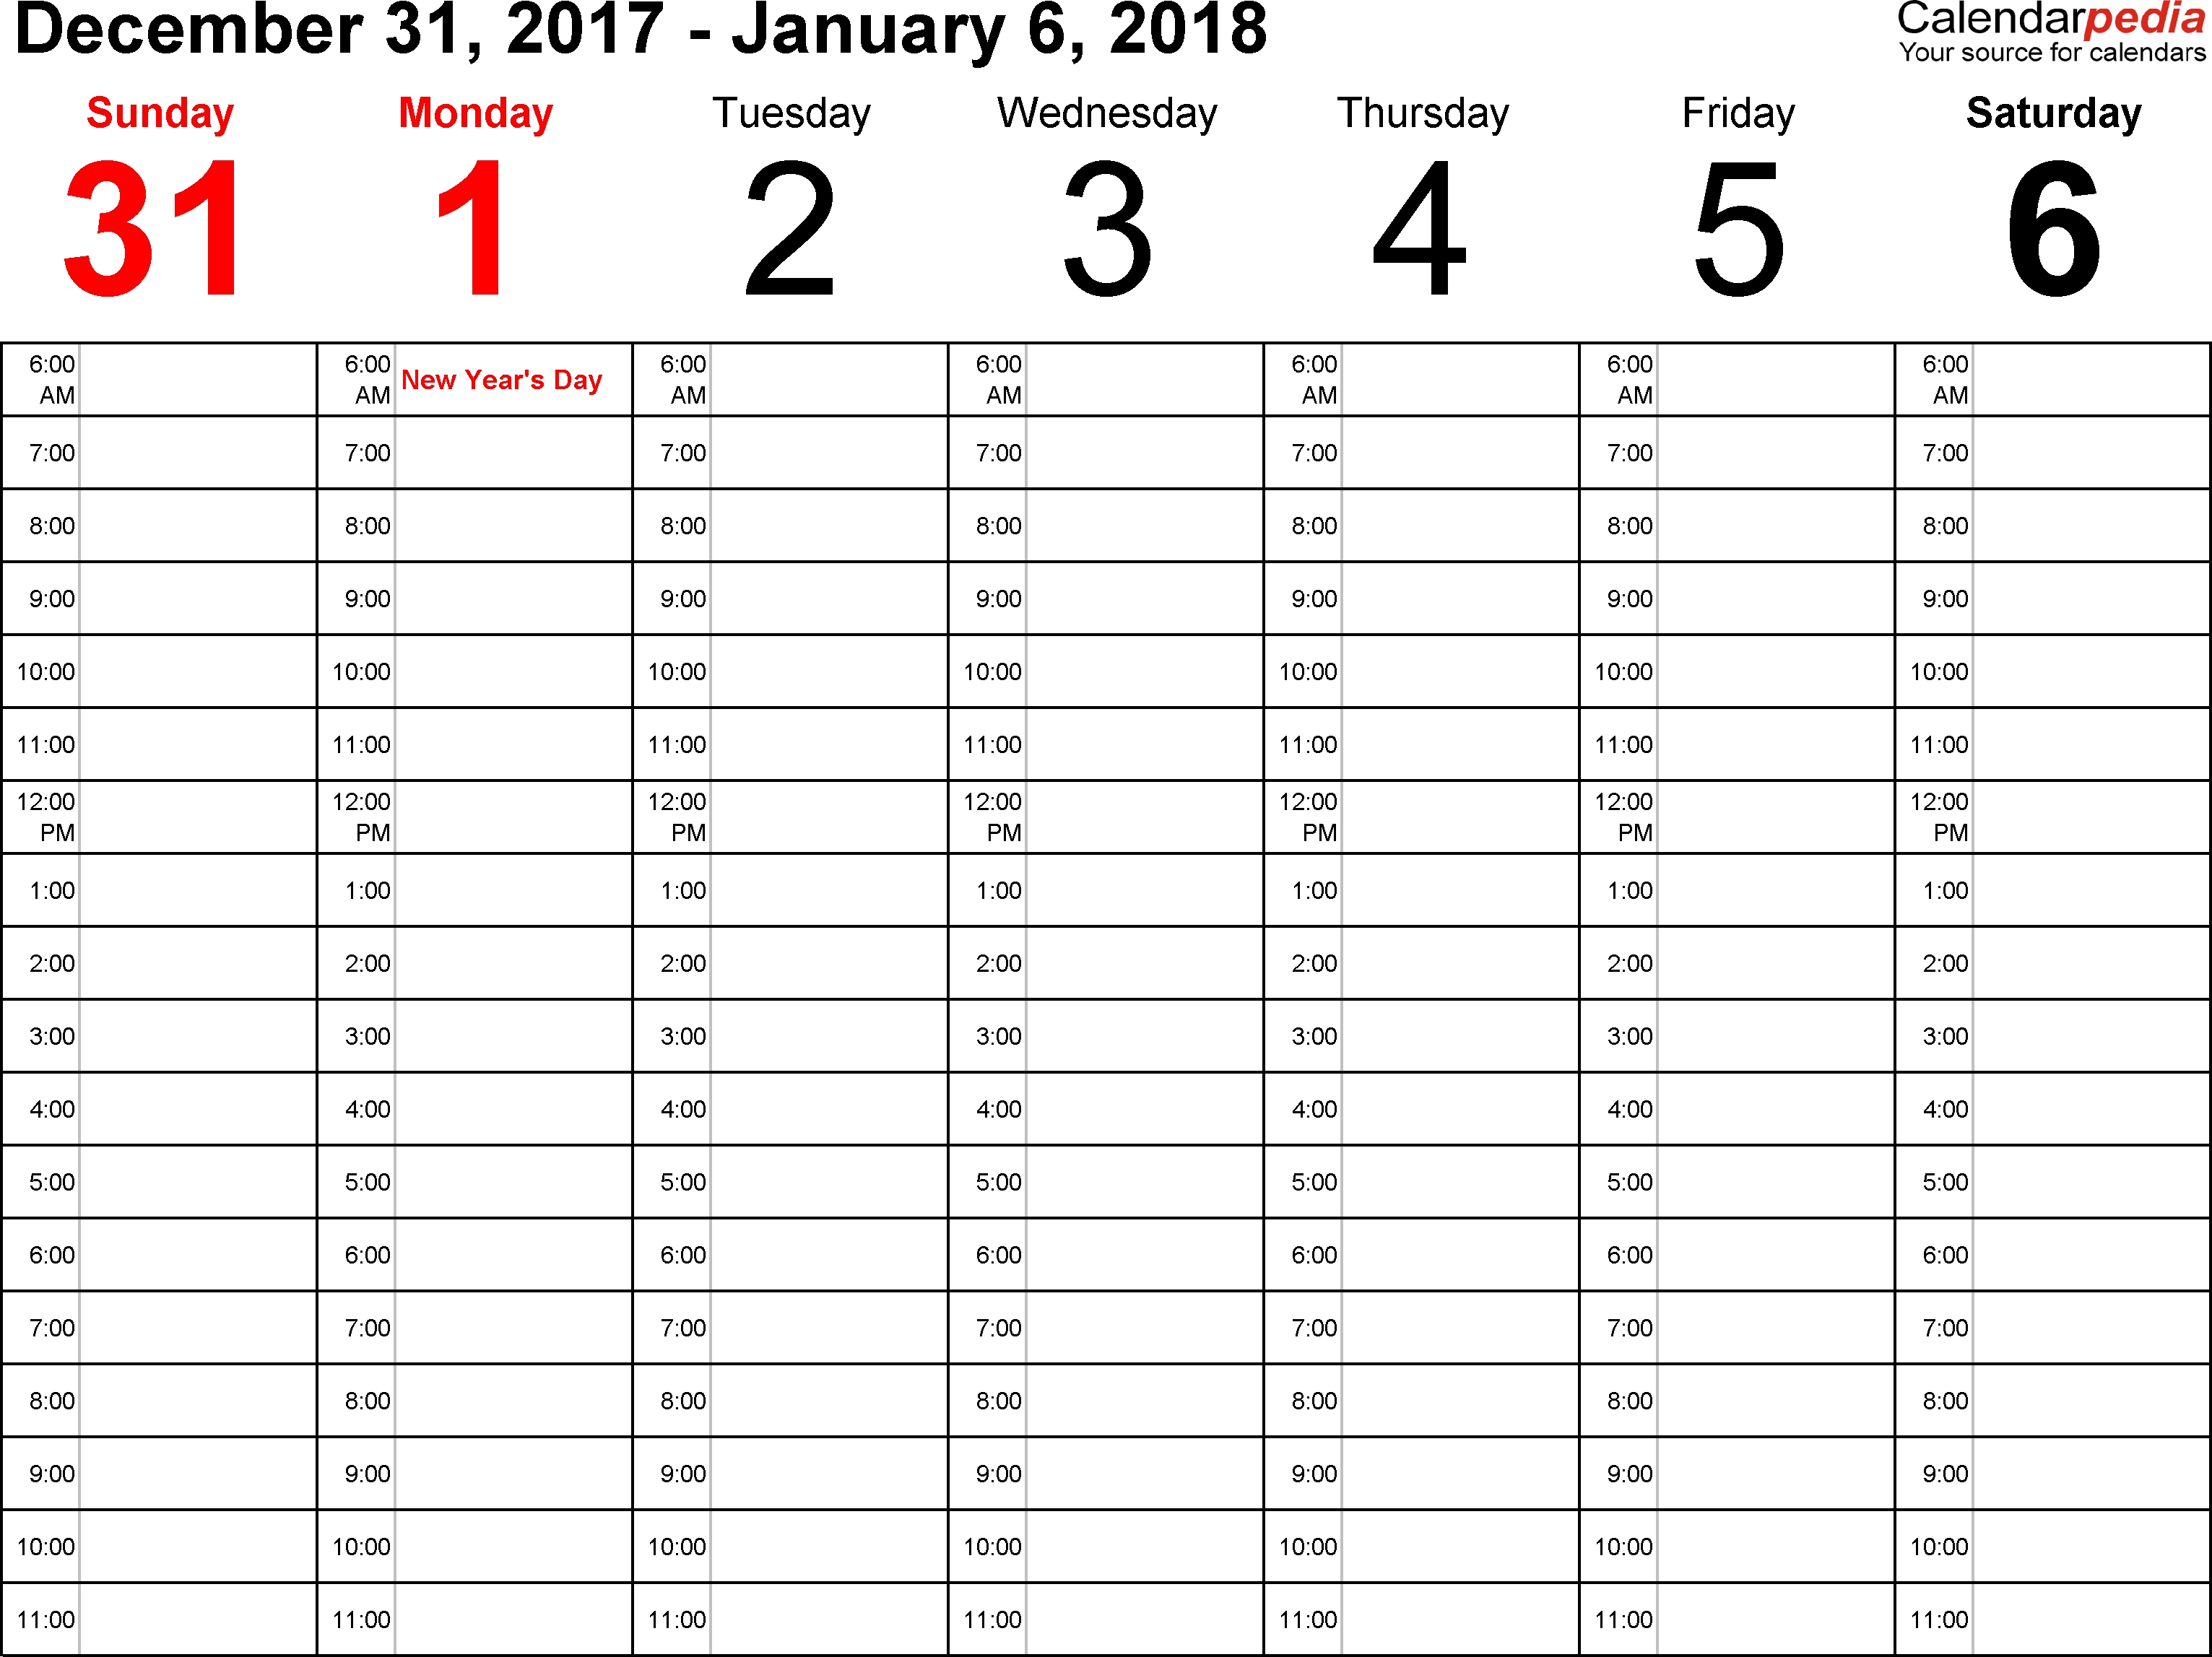 Weekly Calendar 2018 For Word - 12 Free Printable Templates Calendar Template 1 Week